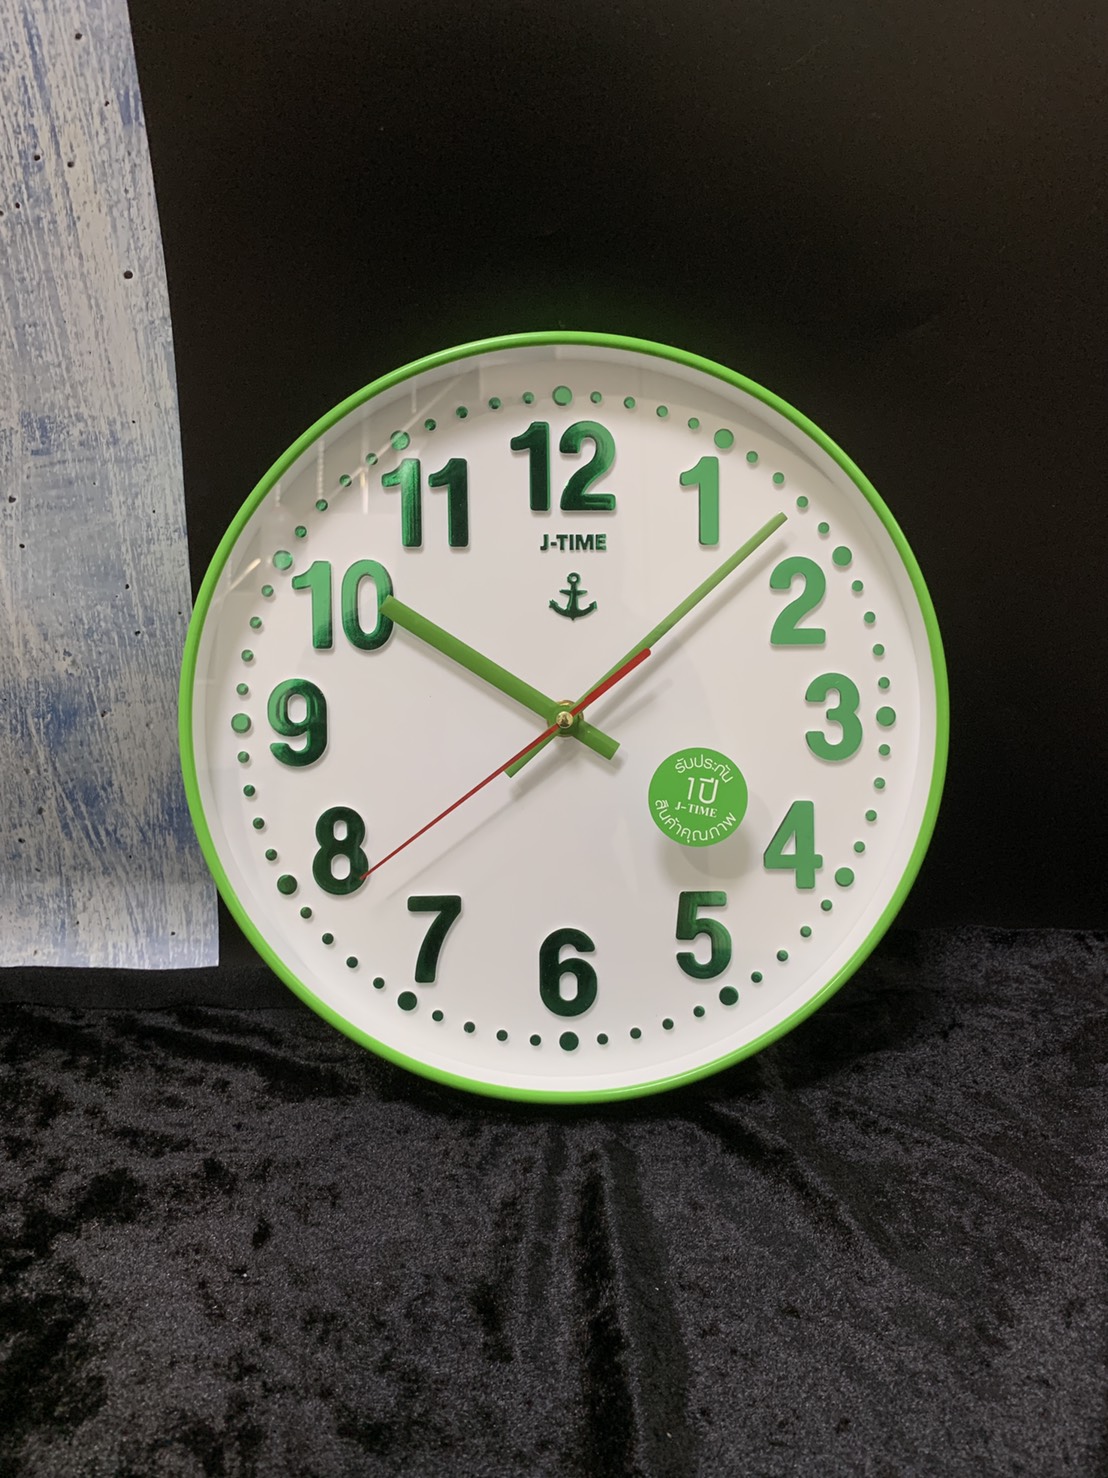 [พร้อมส่ง/มี6สี] นาฬิกาแขวน รุ่น JW-2002 นาฬิกาติดผนัง ทรงกลม สวยหรู หน้าปัดกระจก มองเห็นตัวเลขชัดเจน นาฬิกา ขนาด 11 นิ้ว